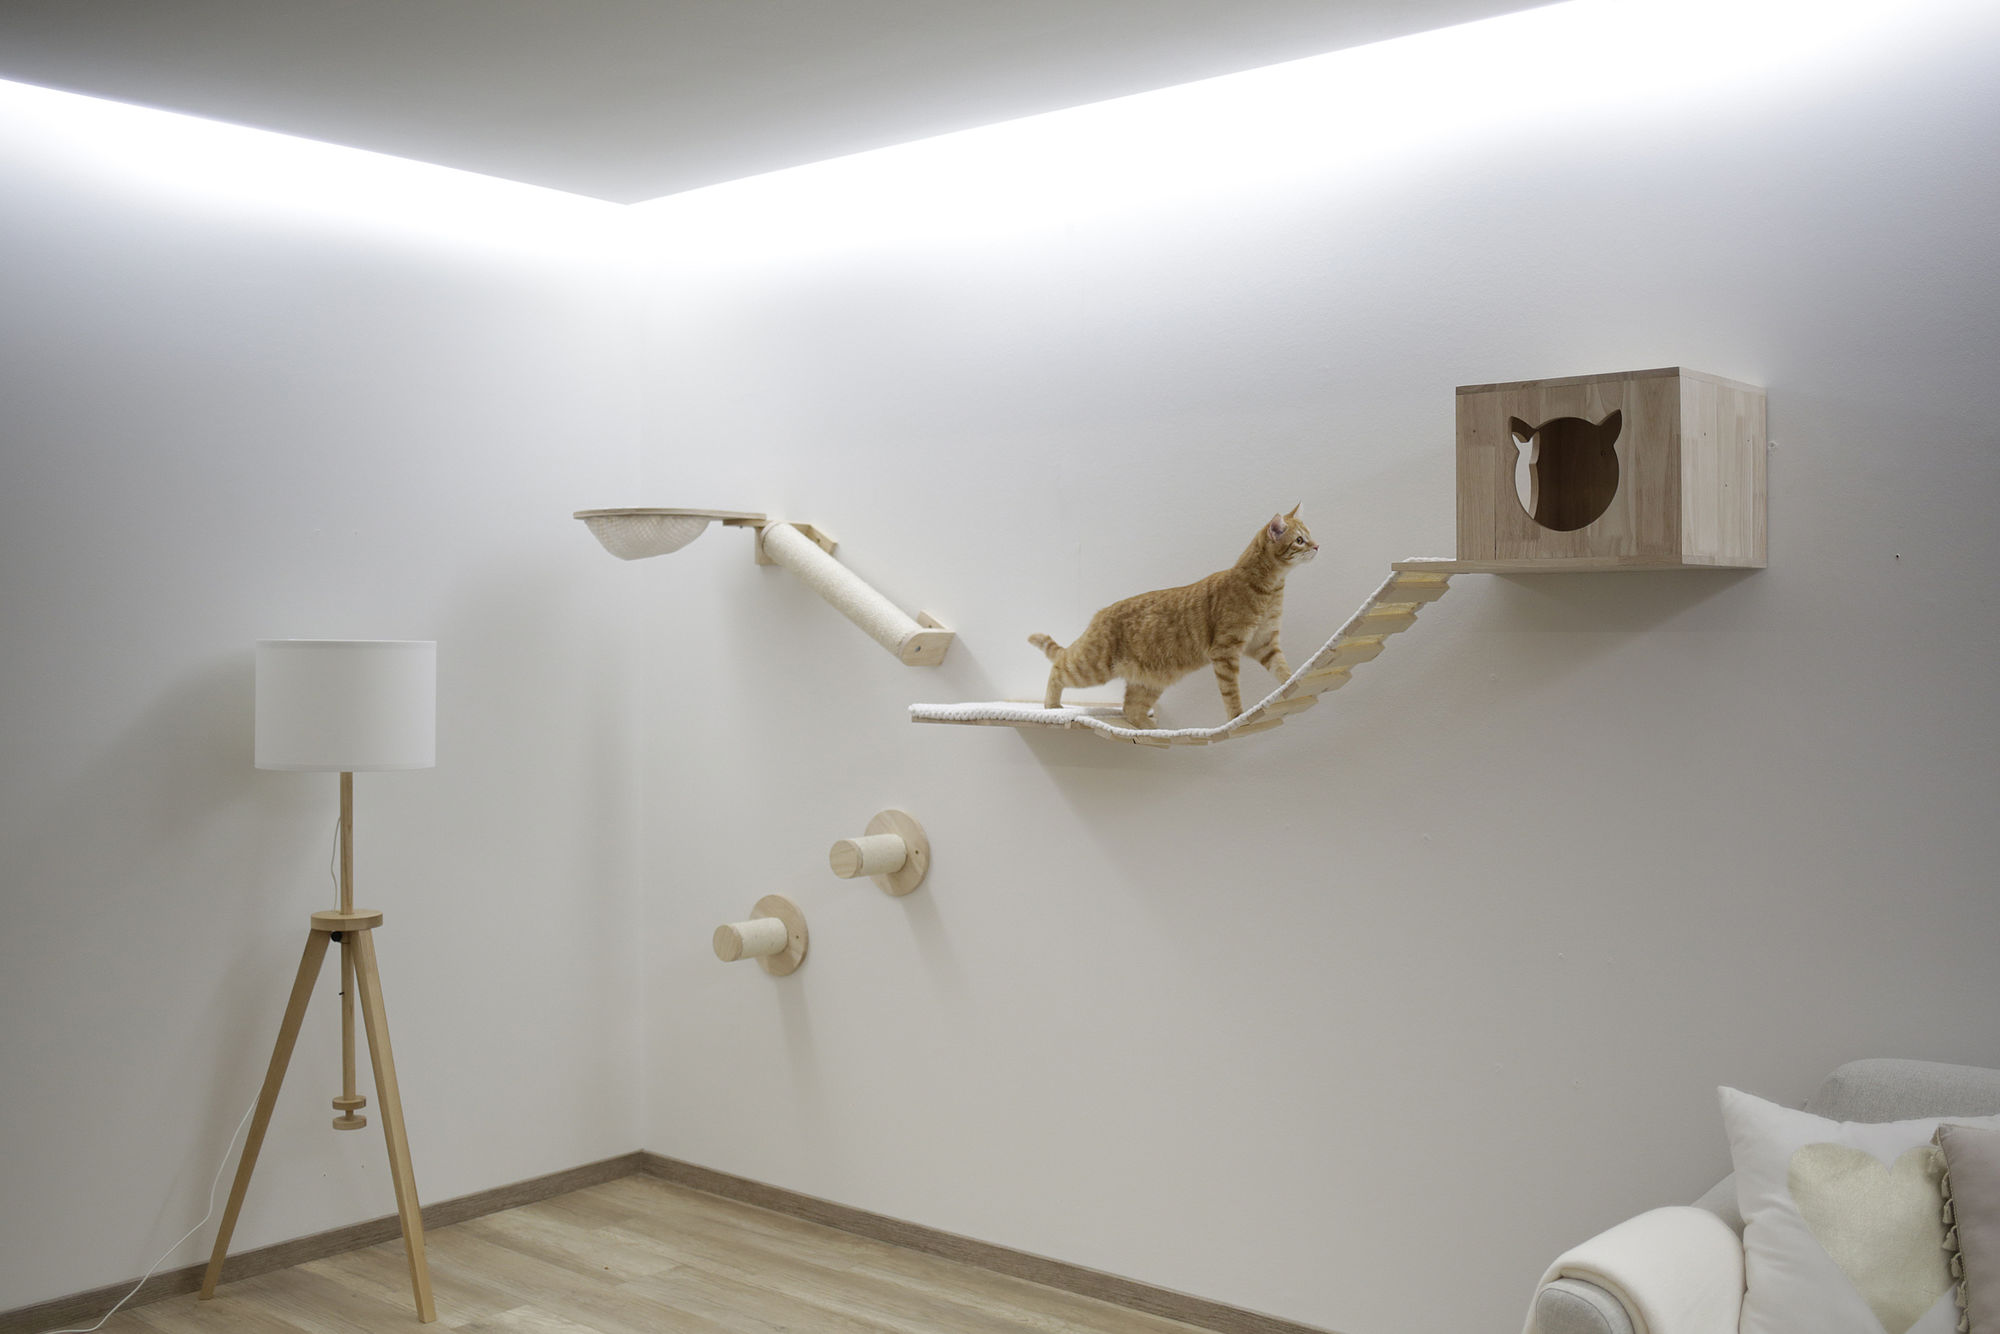 Kletterwand Anden für Katzen, 8-teilig, natur/weiß